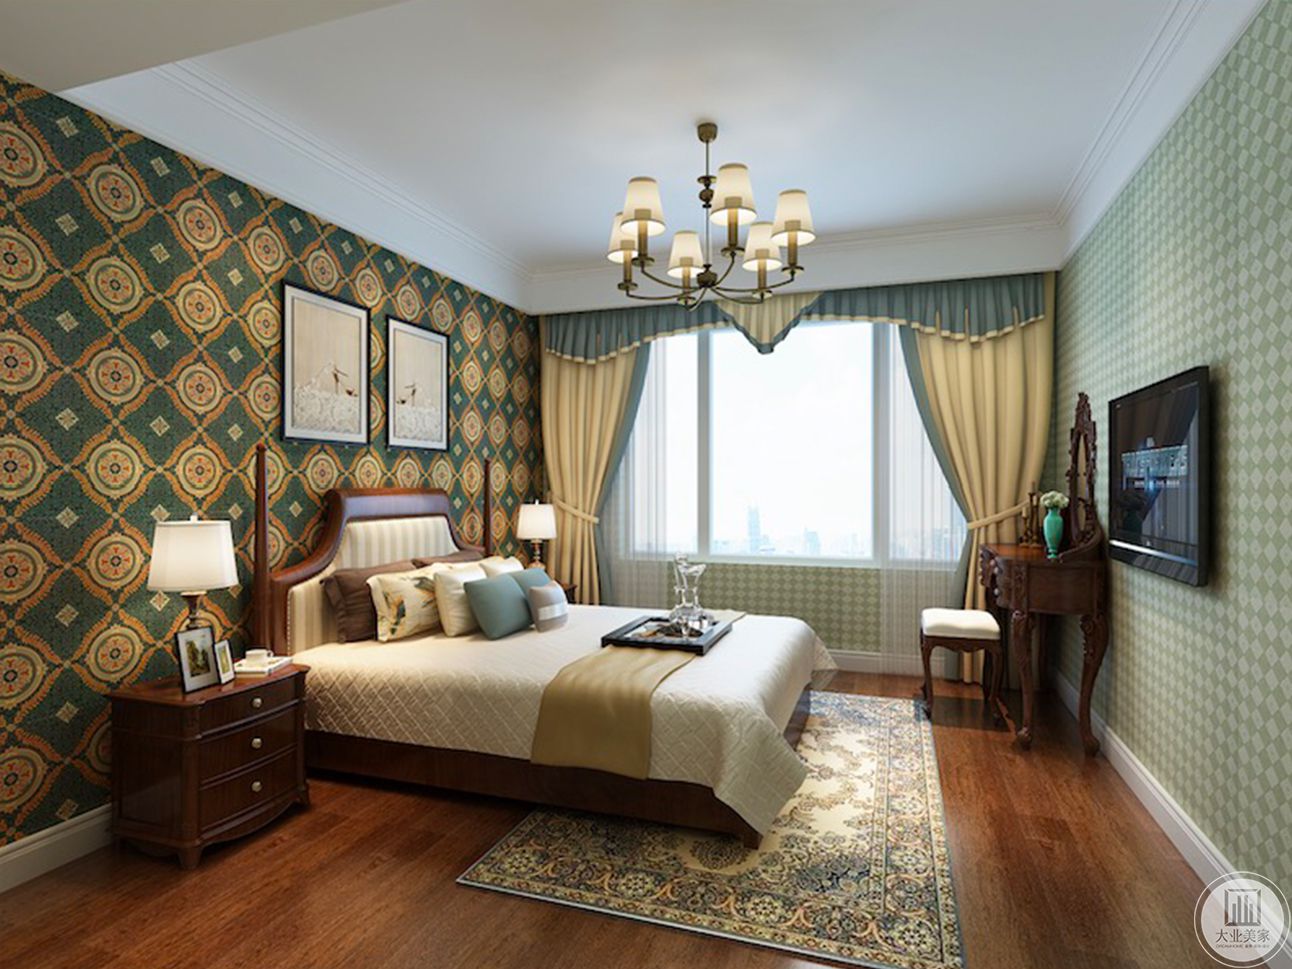 本房间采用绿色纹理壁纸搭配褐色硬件别有一番韵味